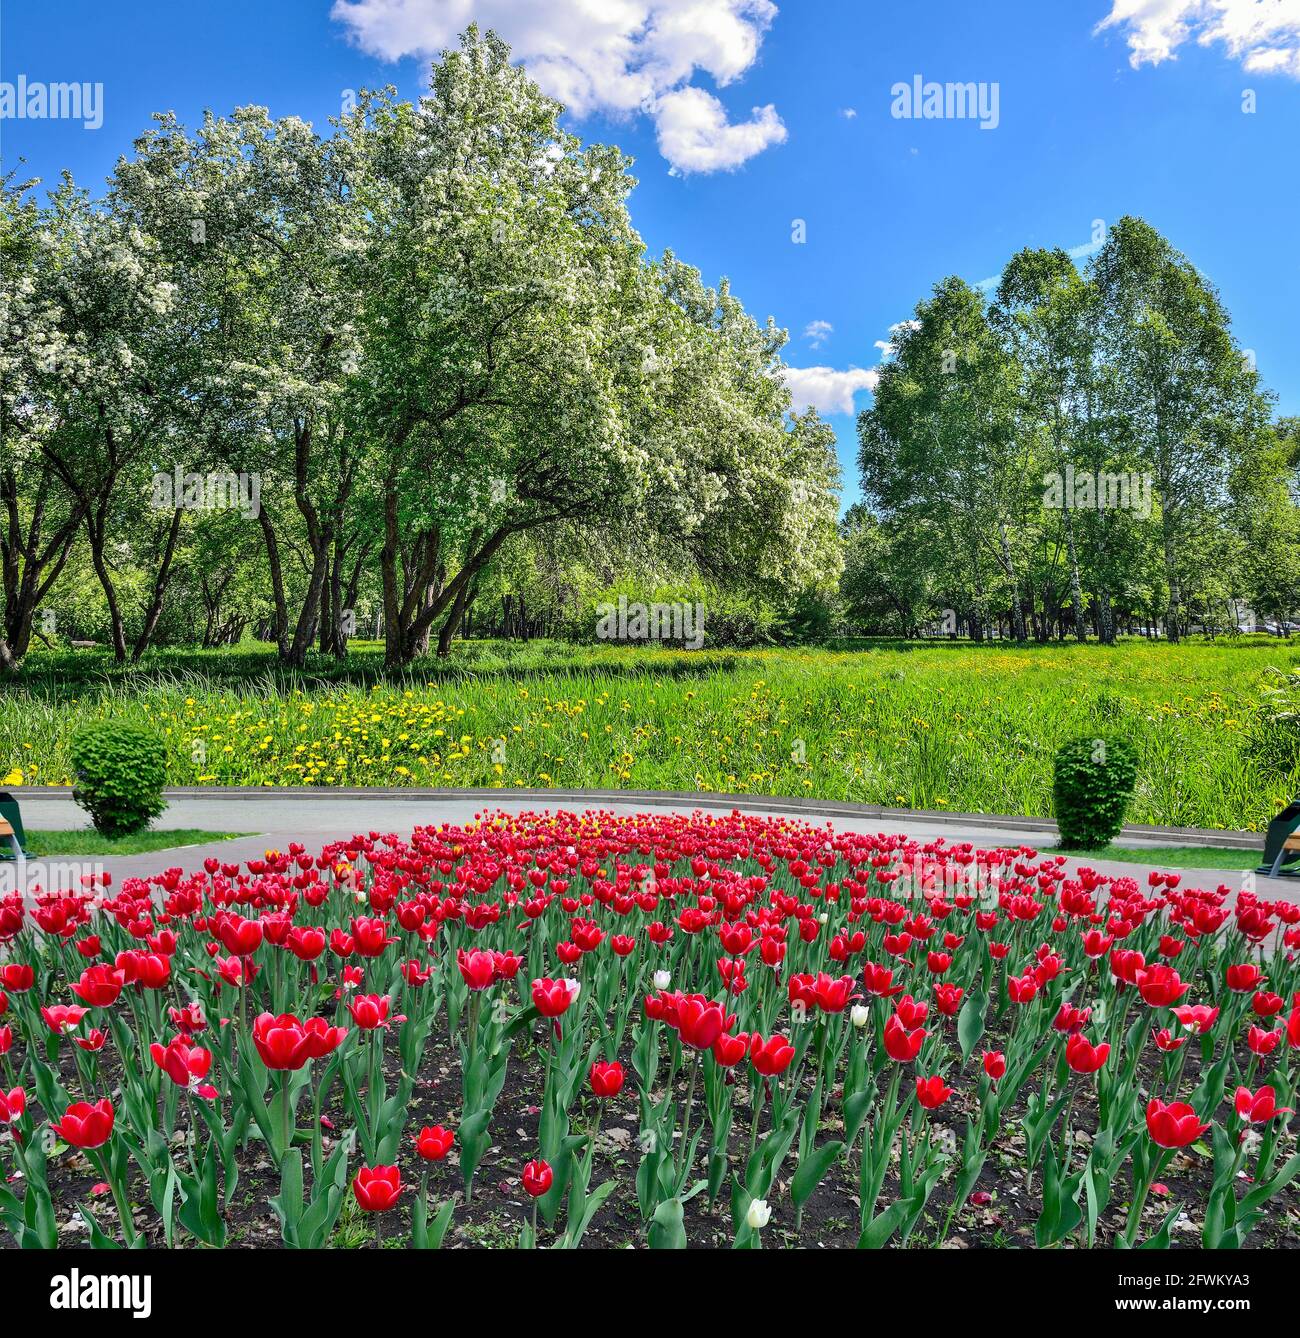 Frühlingsstadtpark mit blühendem Apfelbaum, roten Tulpen, die auf dem Blumenbeet blühen, und gelben Dandelionen, die auf dem Rasen im grünen Gras blühen. Gemütliche Ecke von U Stockfoto